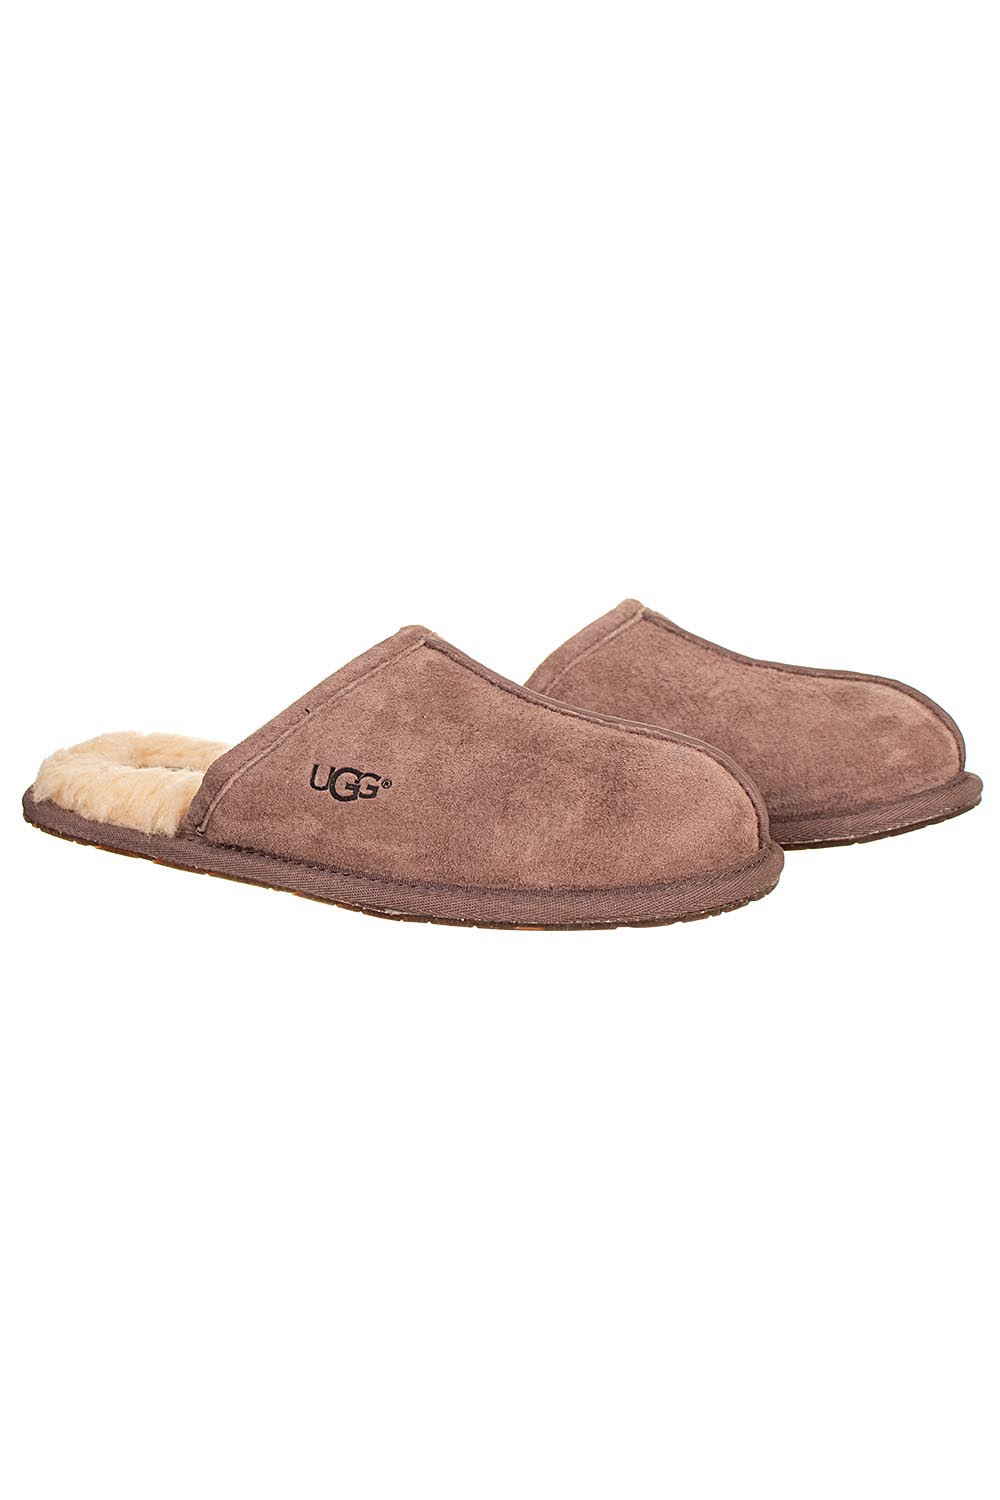 UGG dámské pantofle pearle hnědé kožené Velikost: EU 38